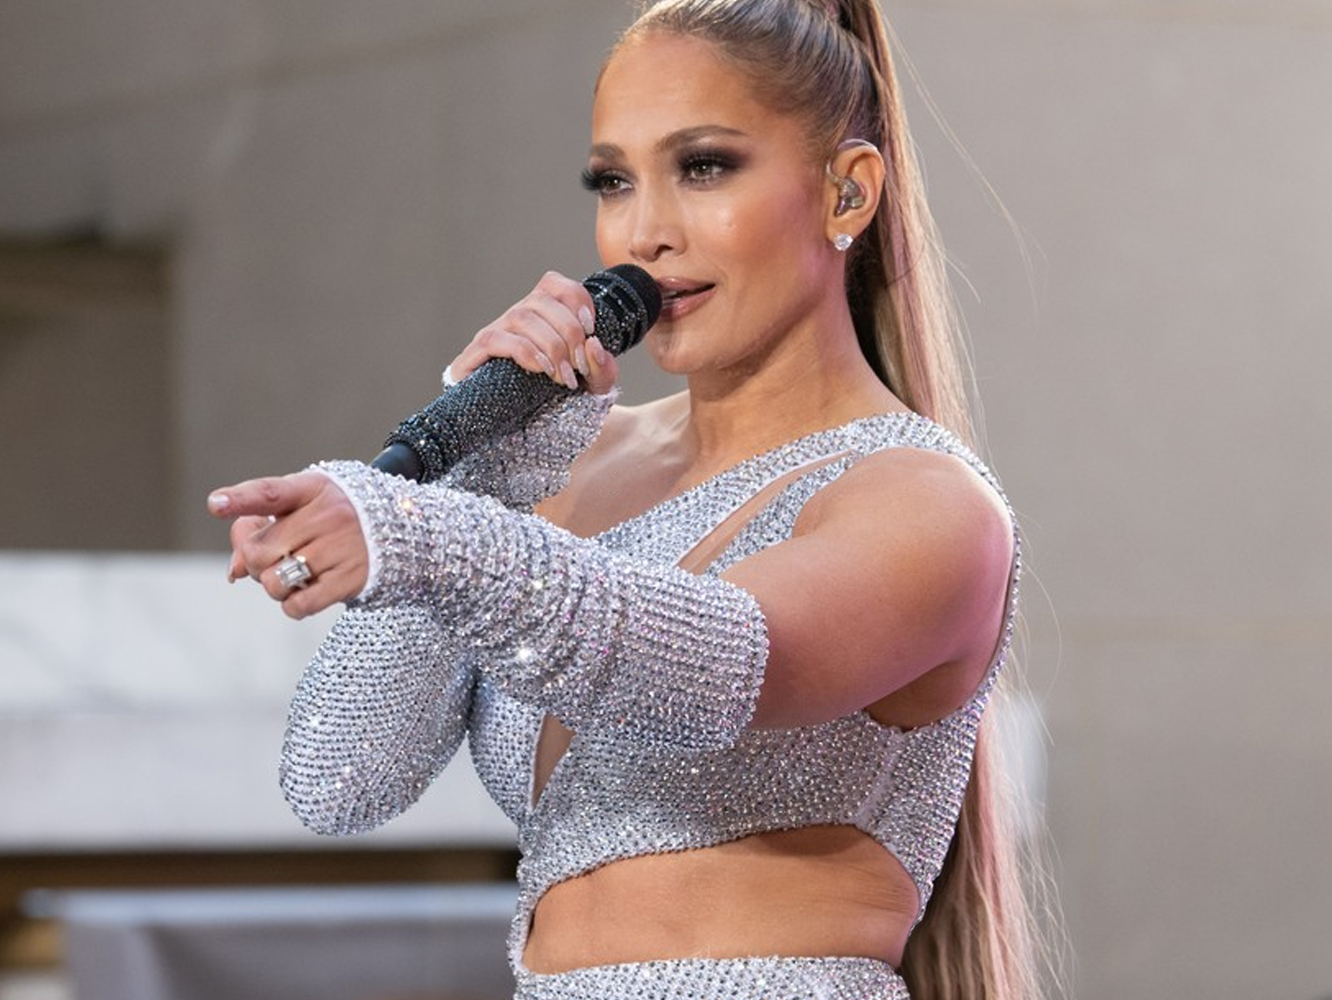  Jennifer Lopez presenta ‘Medicine’, ‘Dinero’ y ‘On The Floor’ en el concierto del ‘Today Show’